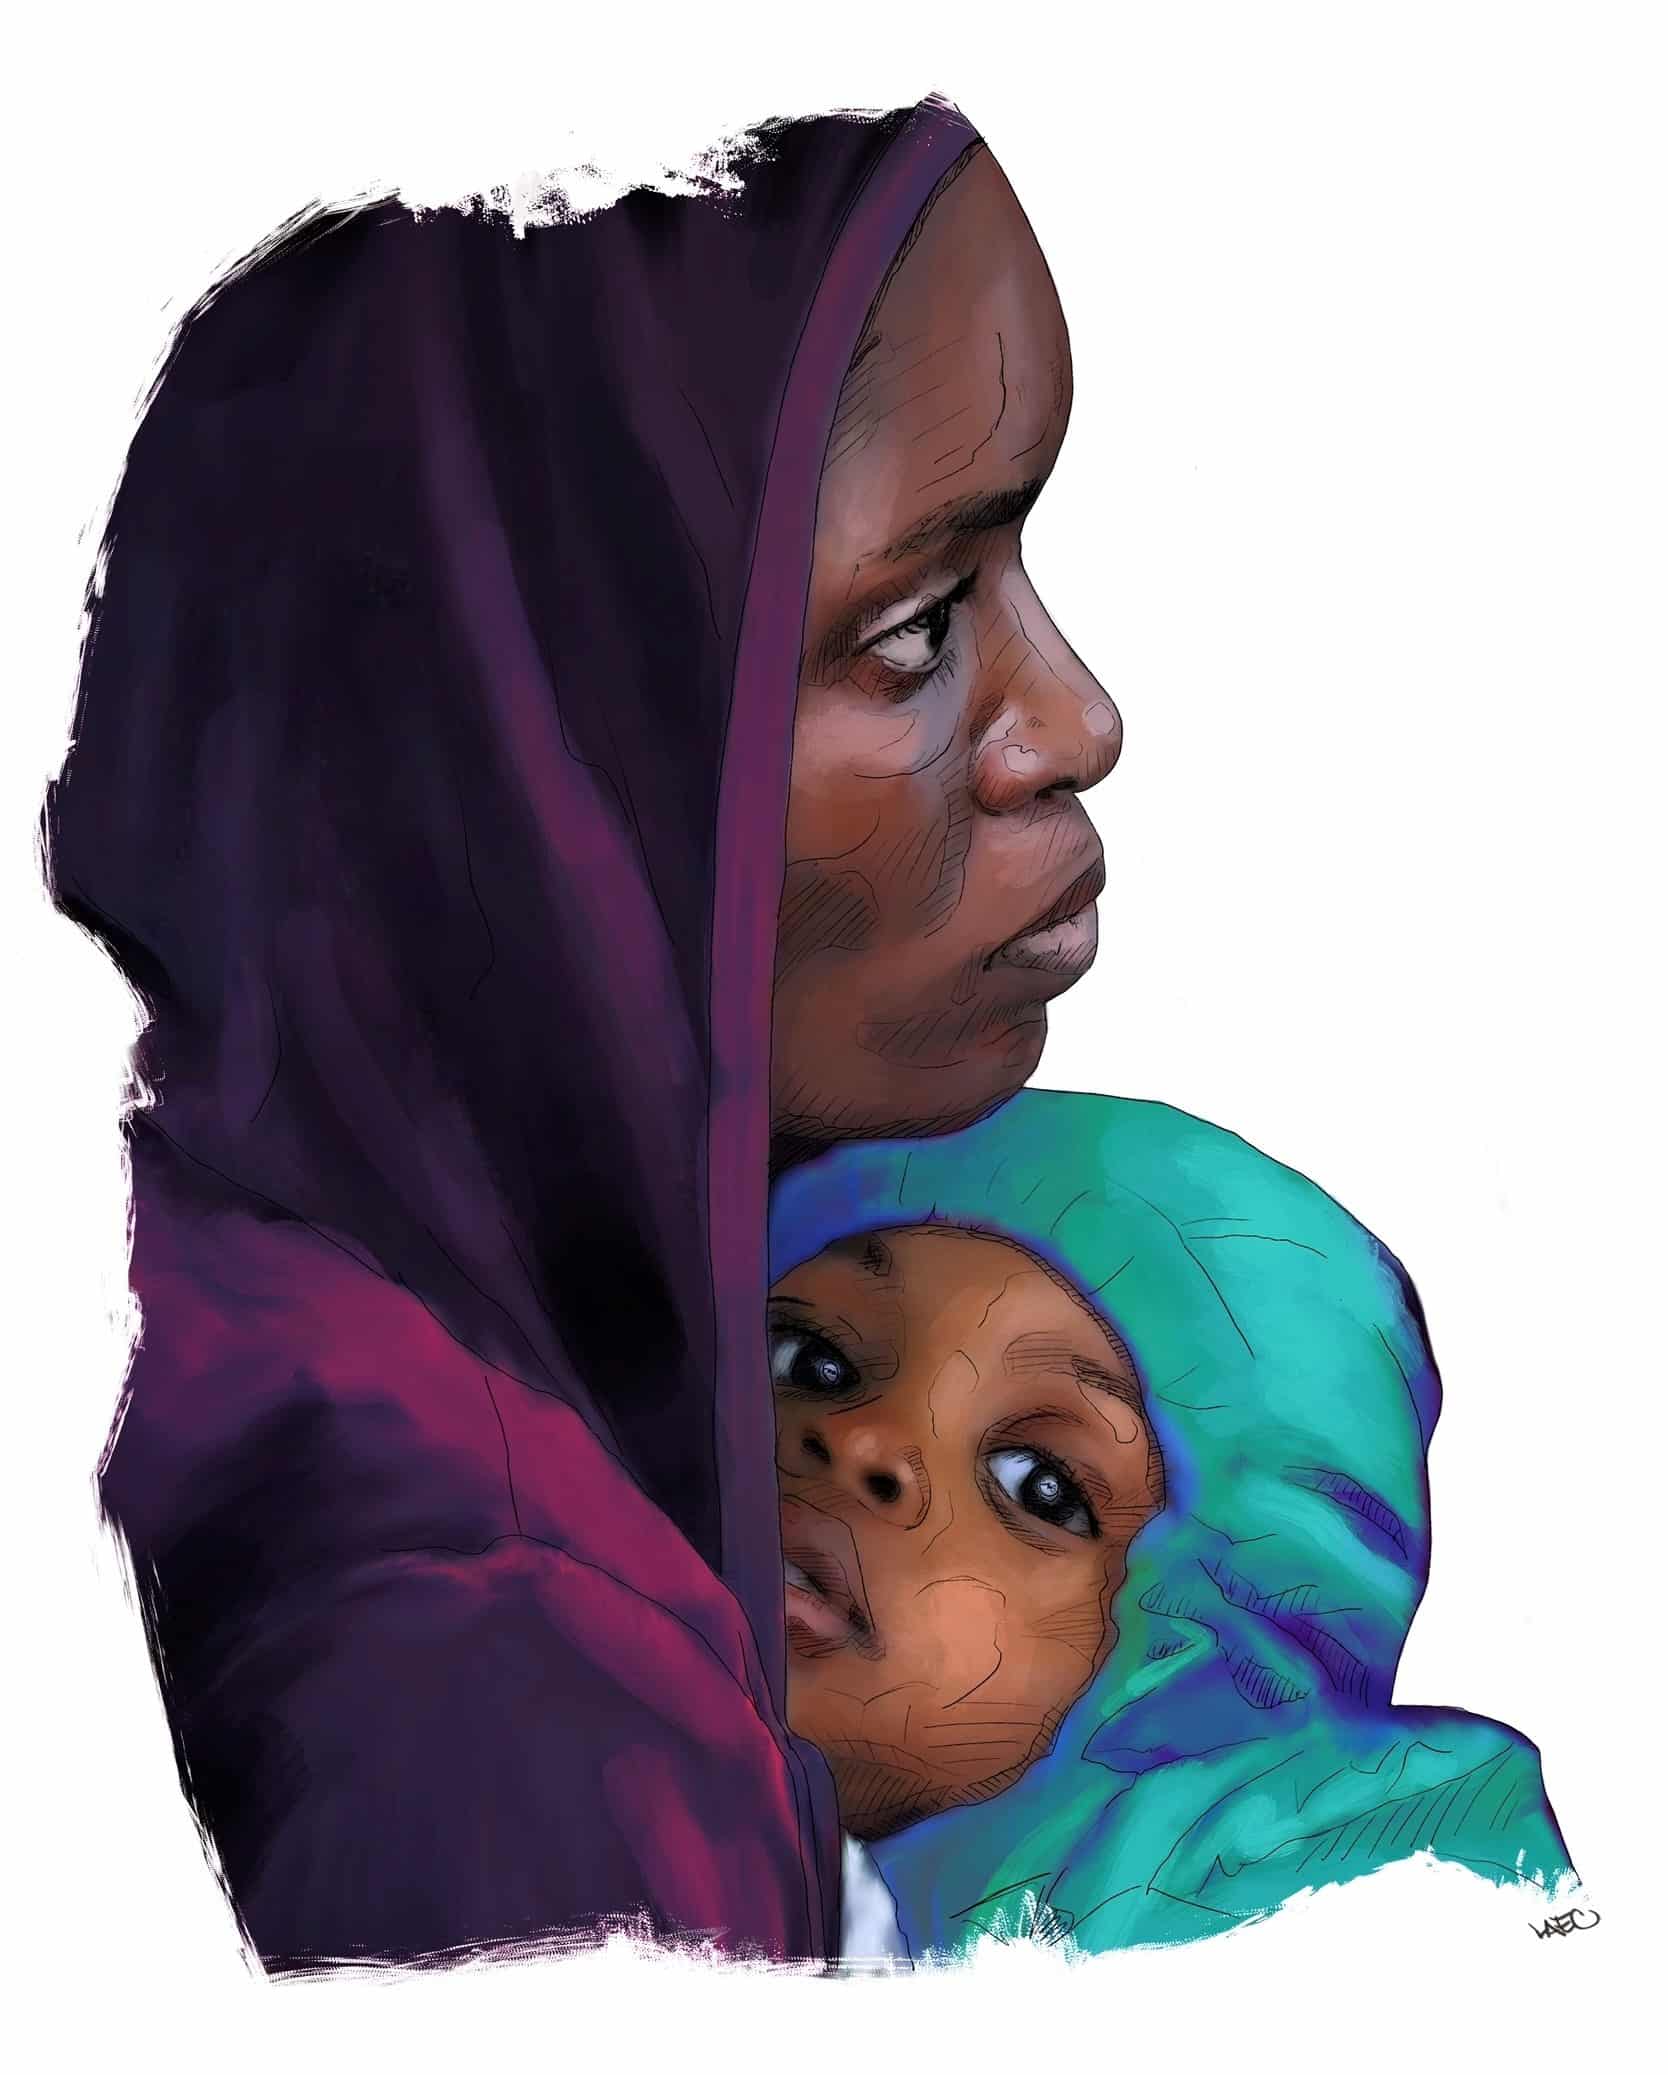 Femme et son enfant, illustration de l'artiste Laec.